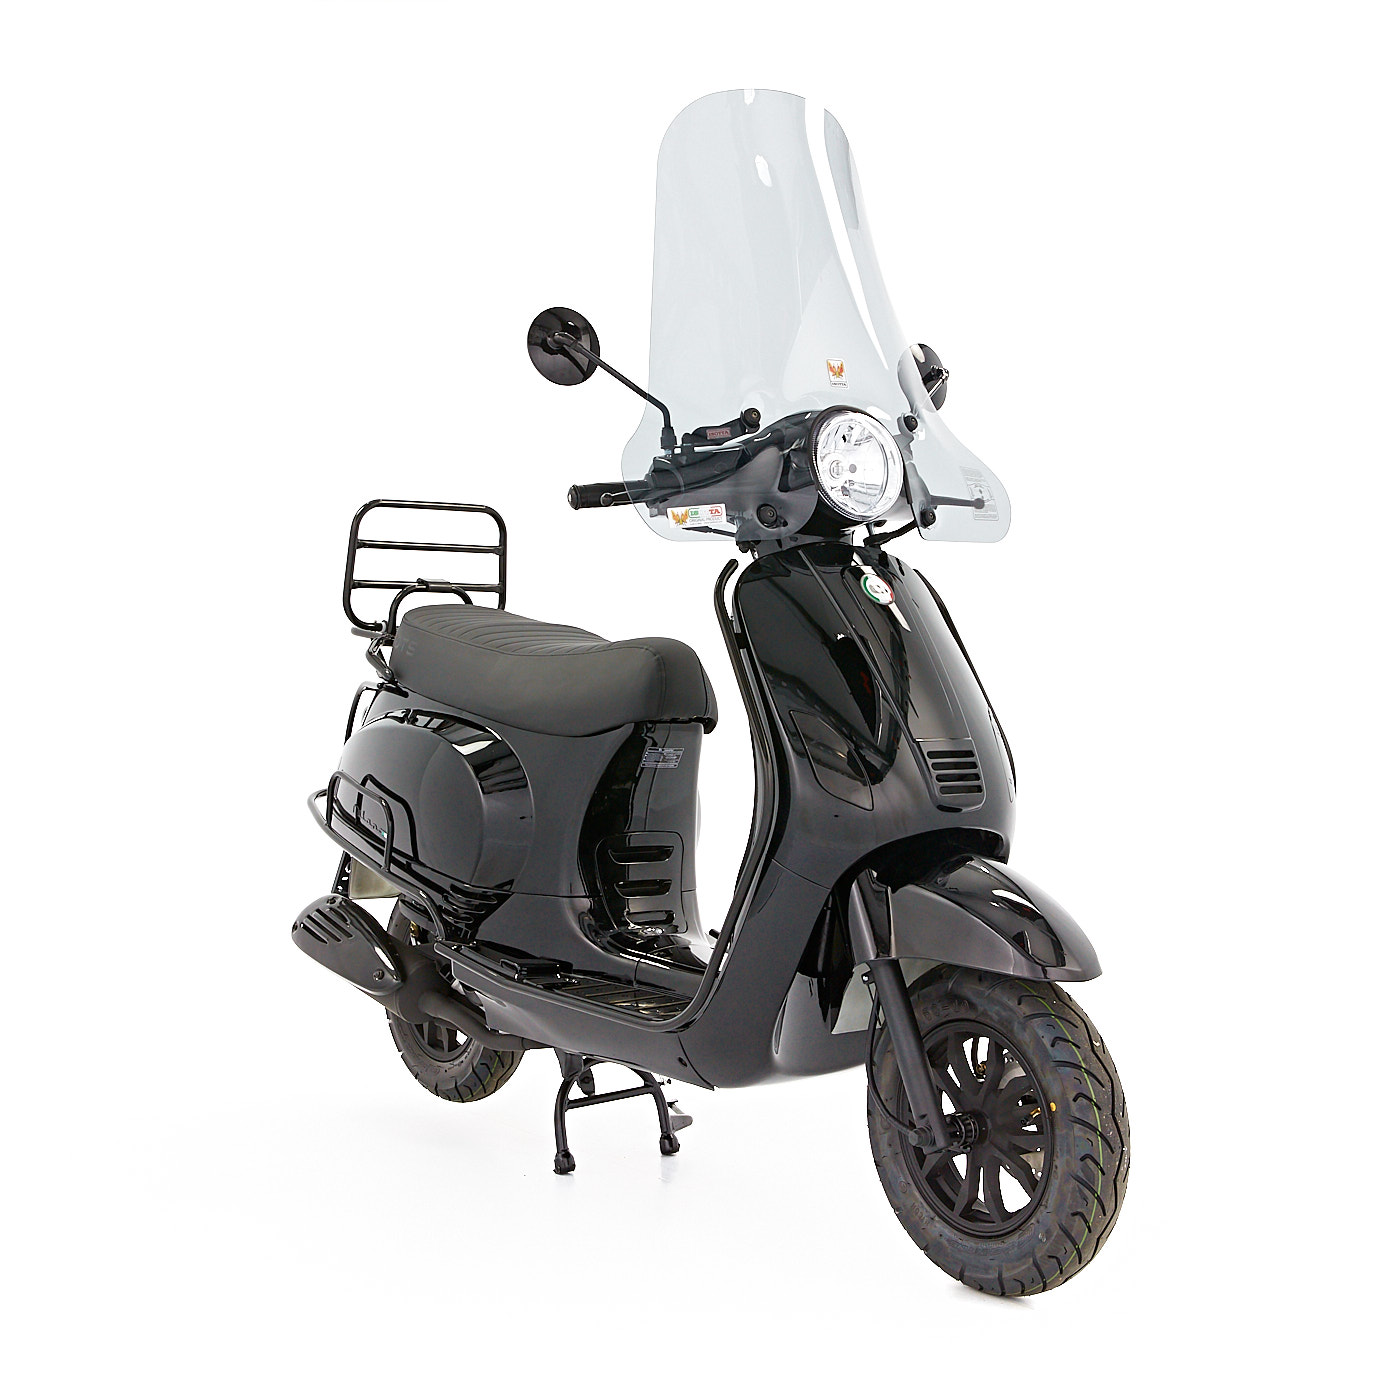 DTS limited Glans zwart scooter kopen bij Scooters